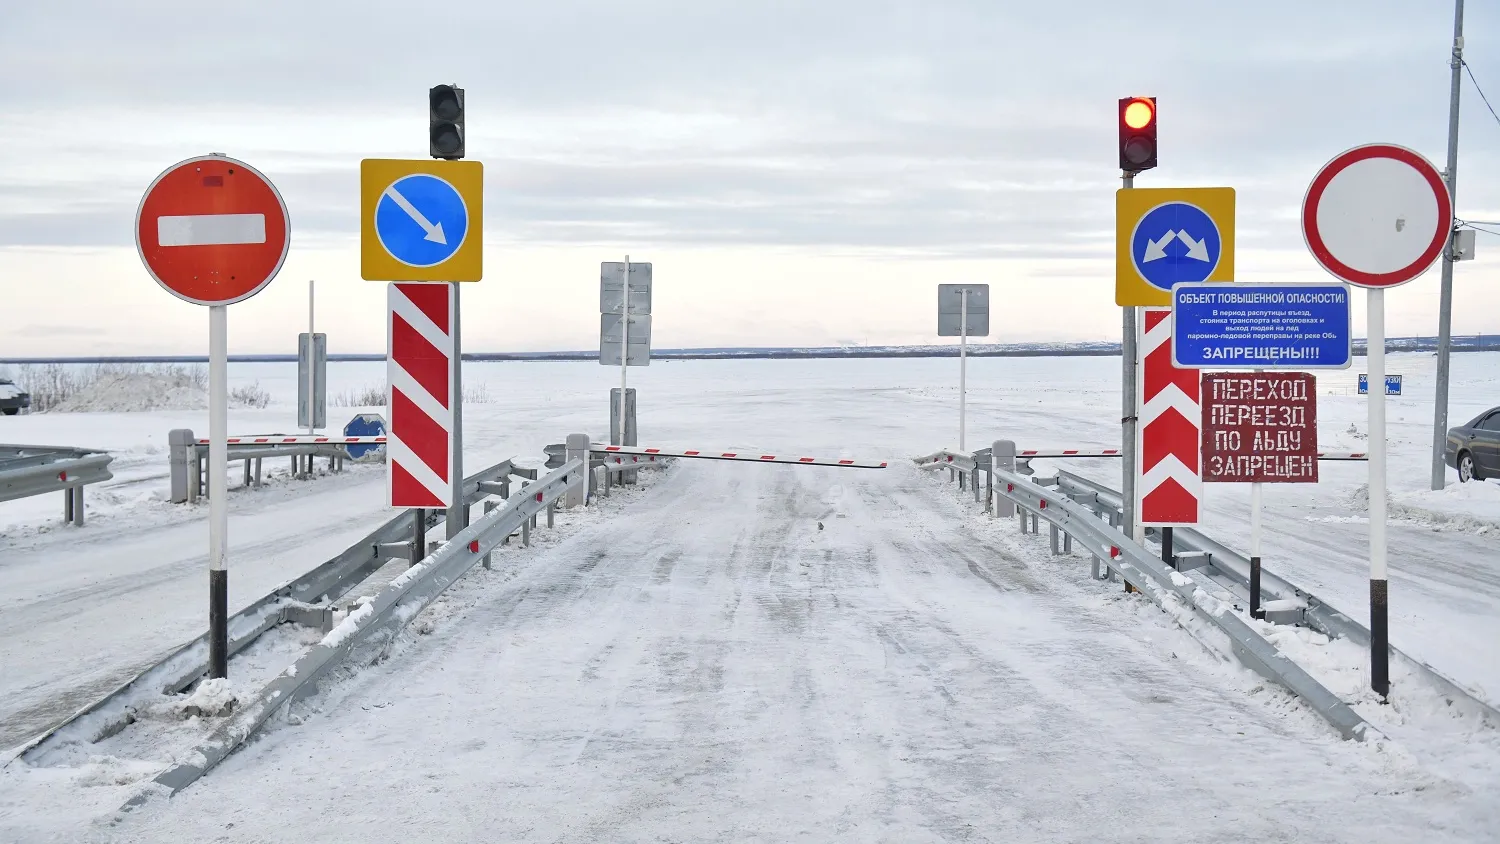 Транспорт на лёд пропустят только после того, как появится заключение о безопасности проезда. Фото: Андрей Ткачёв / "Ямал-Медиа"